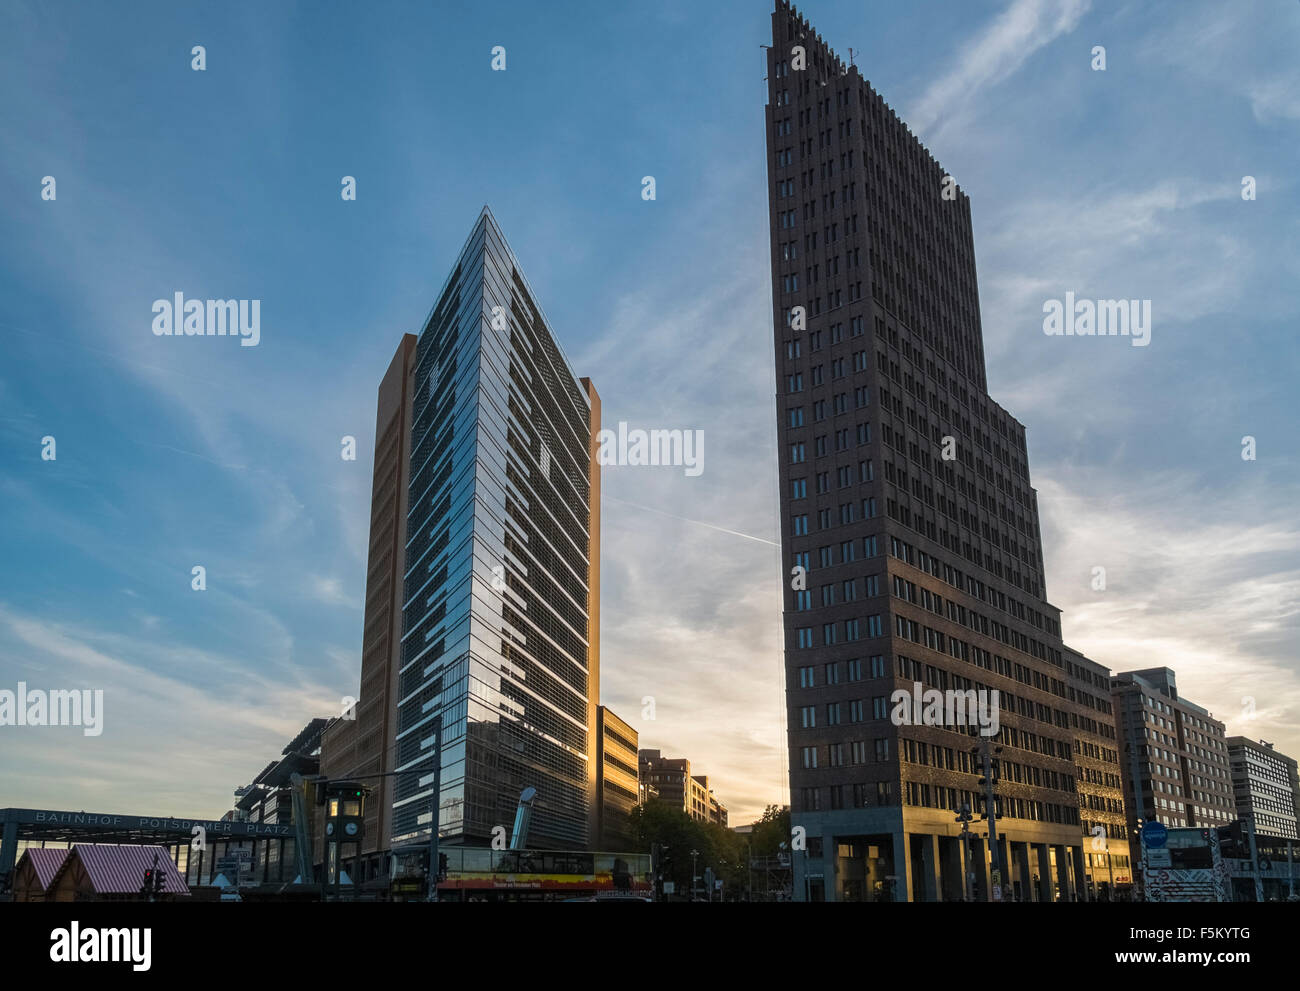 Moderne Architektur der PWC undf Kollhoff-Tower Gebäude, Potsdamer Platz, Mitte, Berlin, Deutschland. Stockfoto